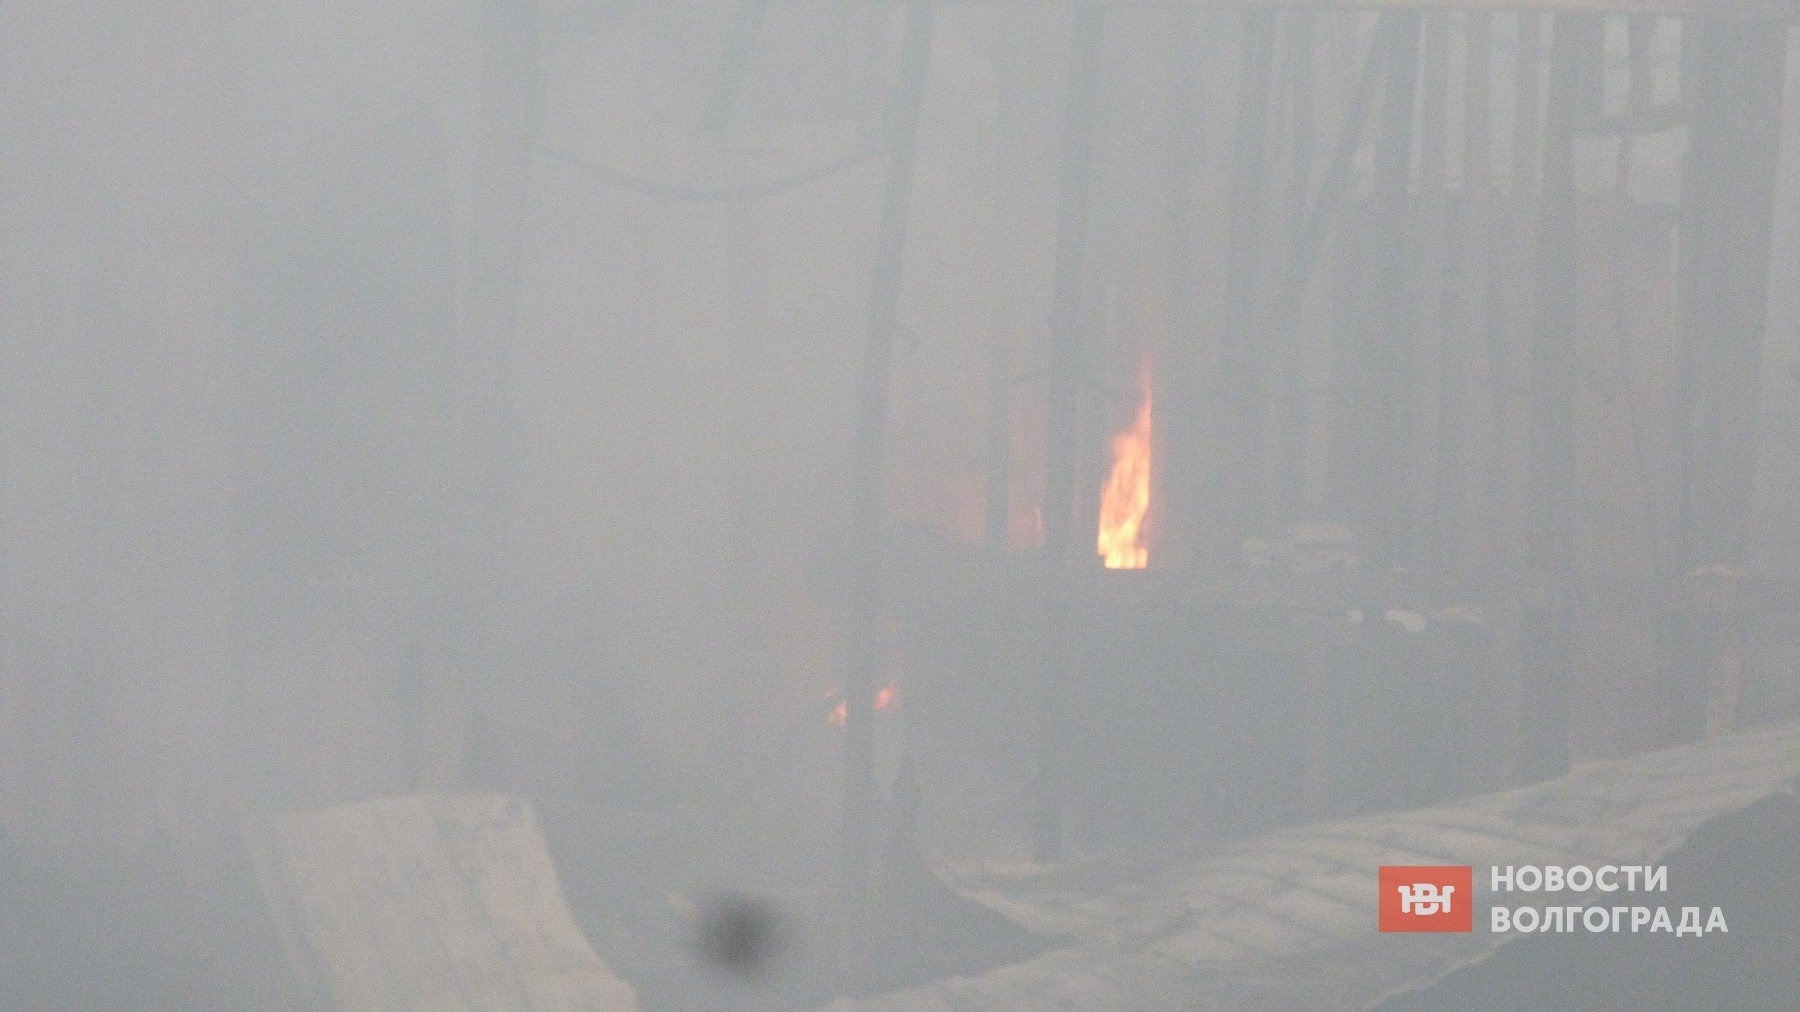 Крупный природный пожар охватил Кировский район Волгограда